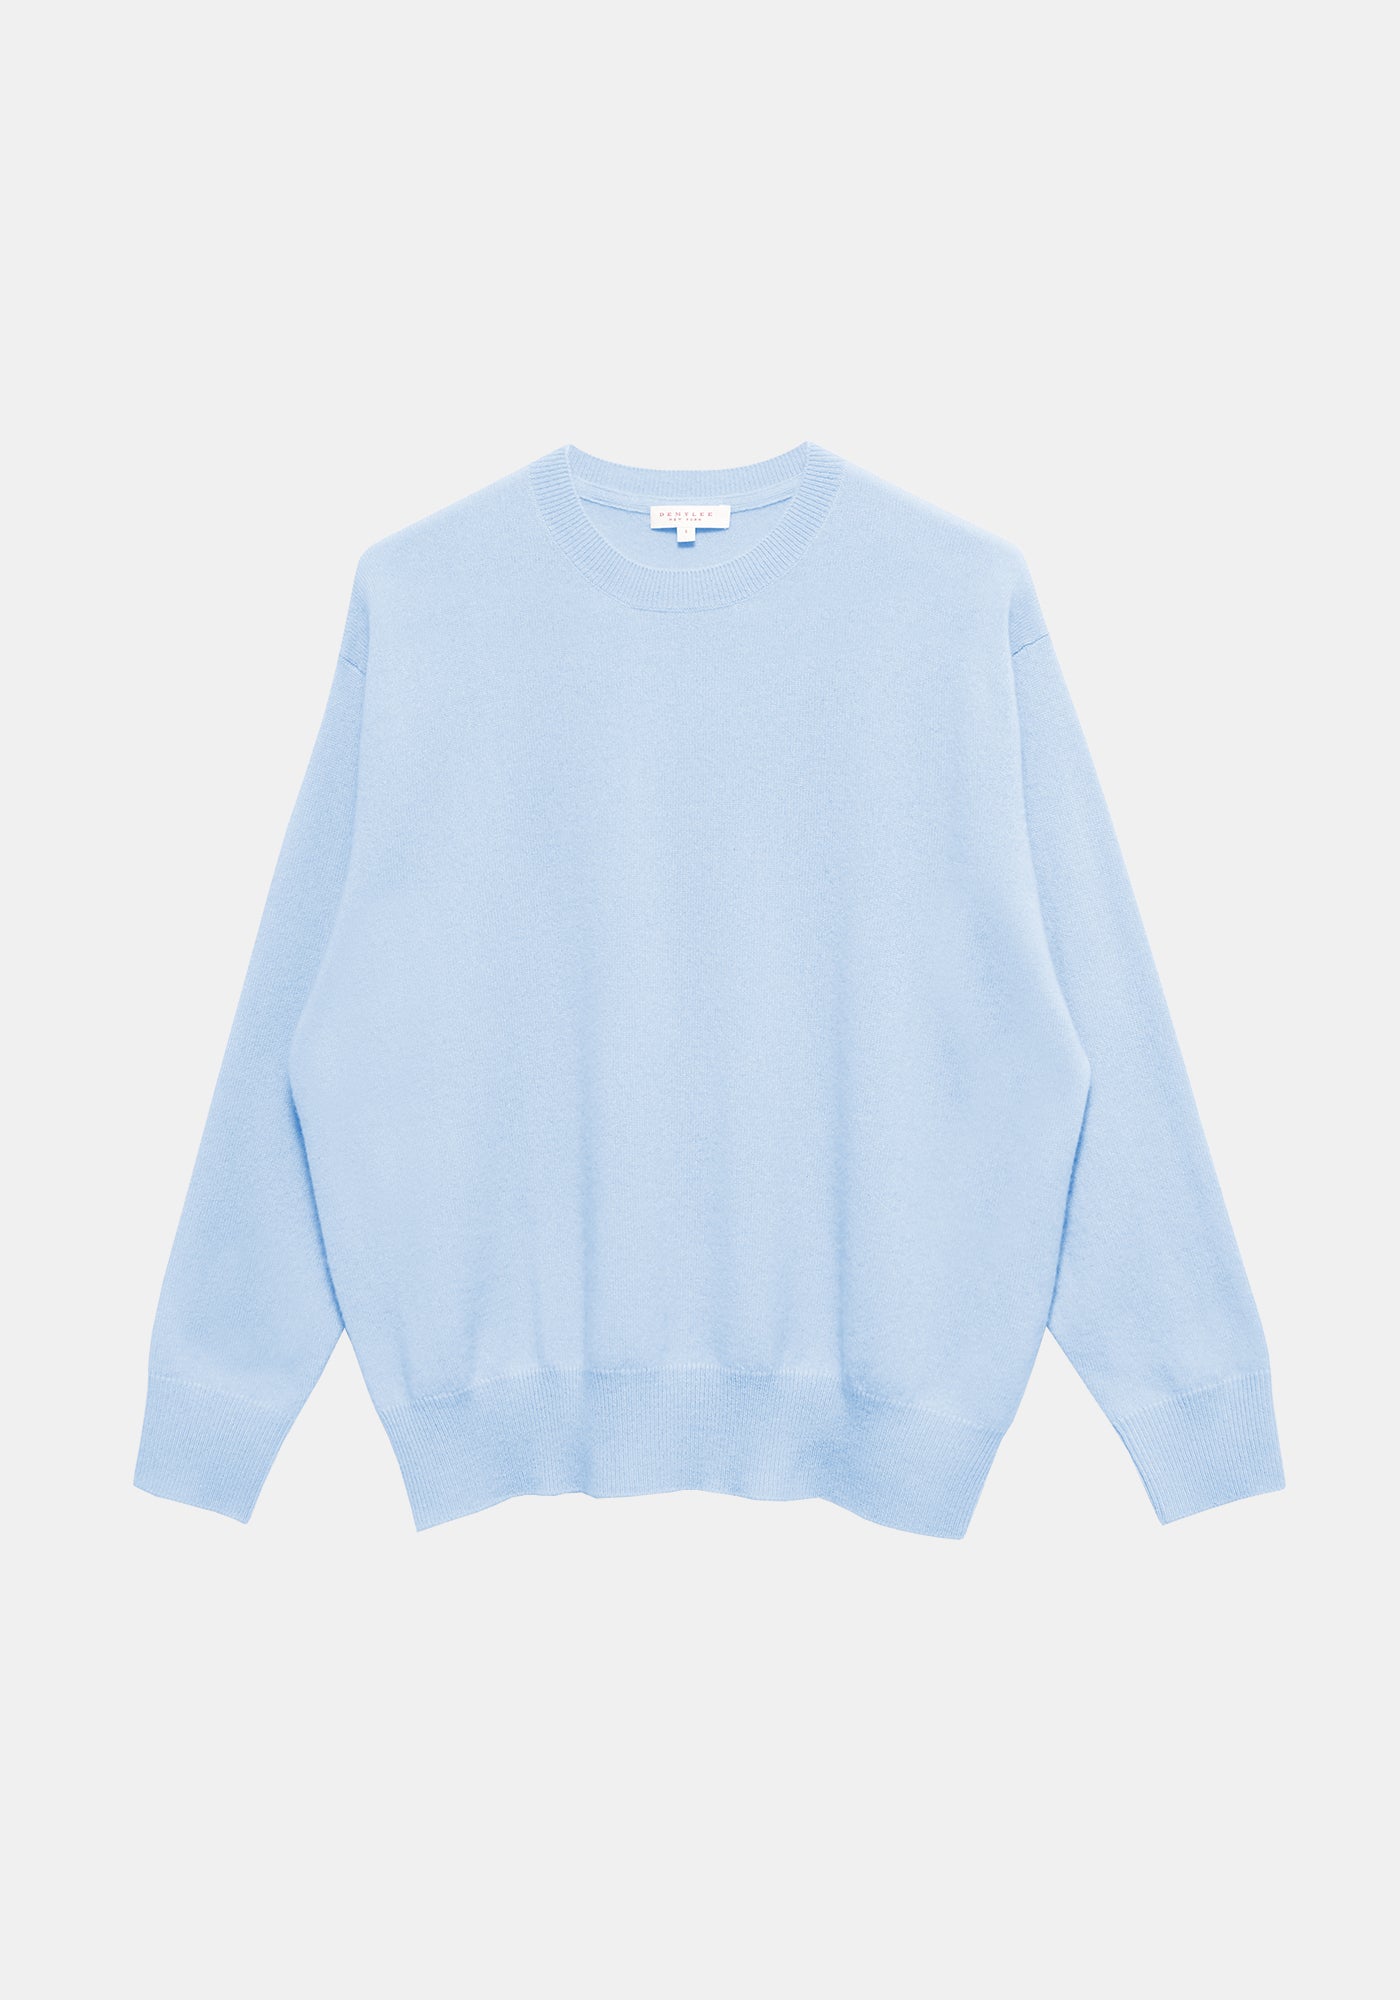 Eider Sweater